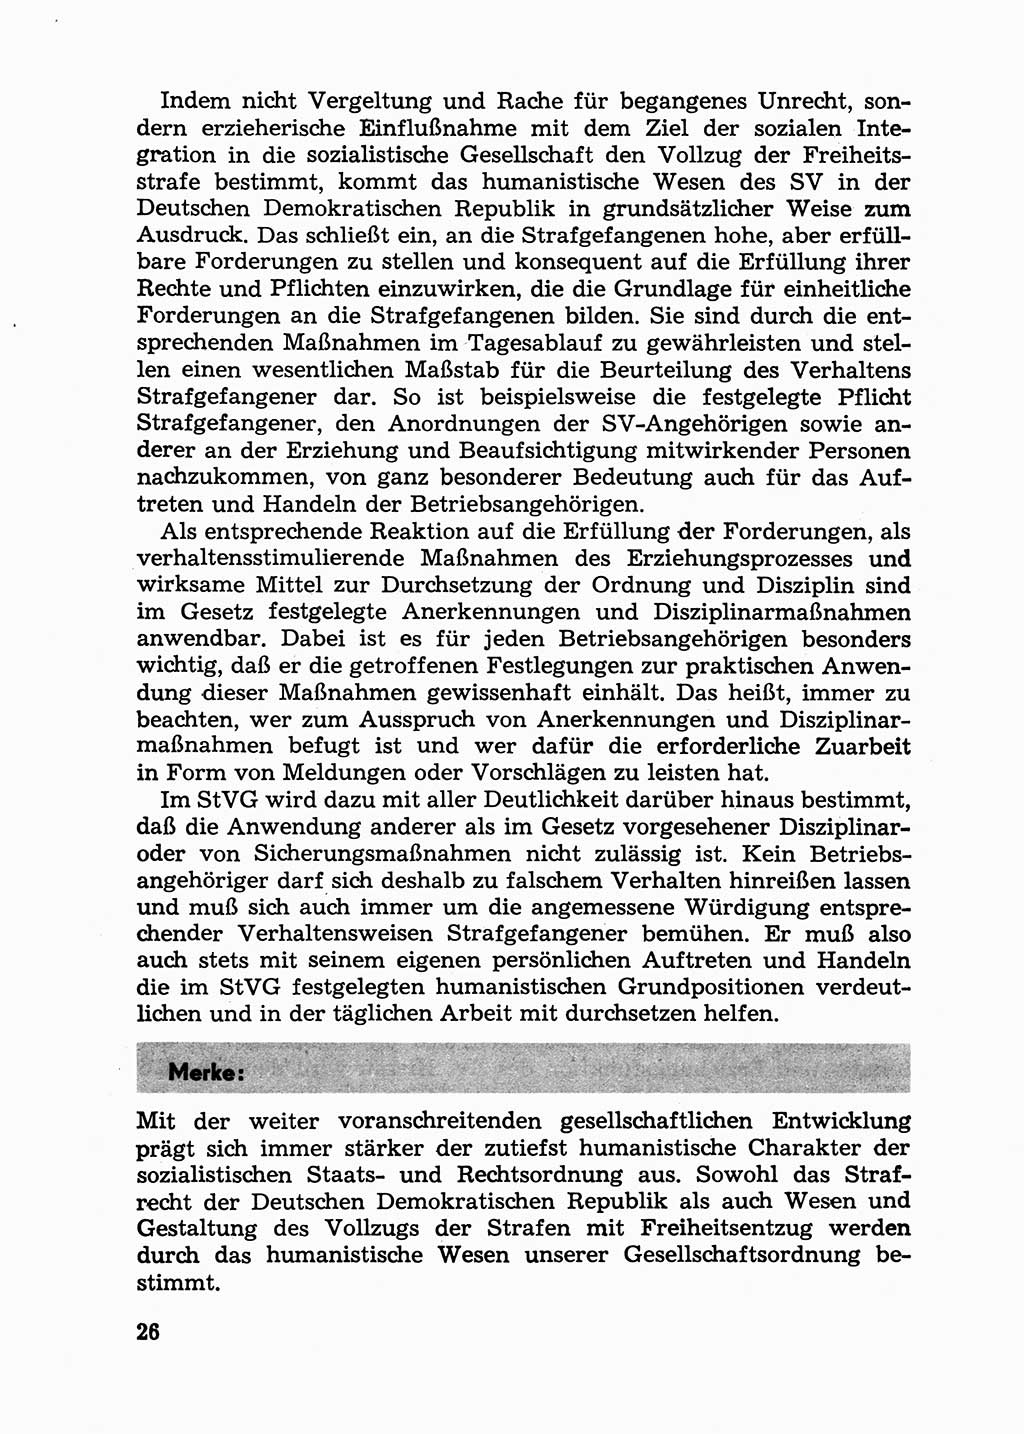 Handbuch für Betriebsangehörige, Abteilung Strafvollzug (SV) [Ministerium des Innern (MdI) Deutsche Demokratische Republik (DDR)] 1981, Seite 26 (Hb. BA Abt. SV MdI DDR 1981, S. 26)